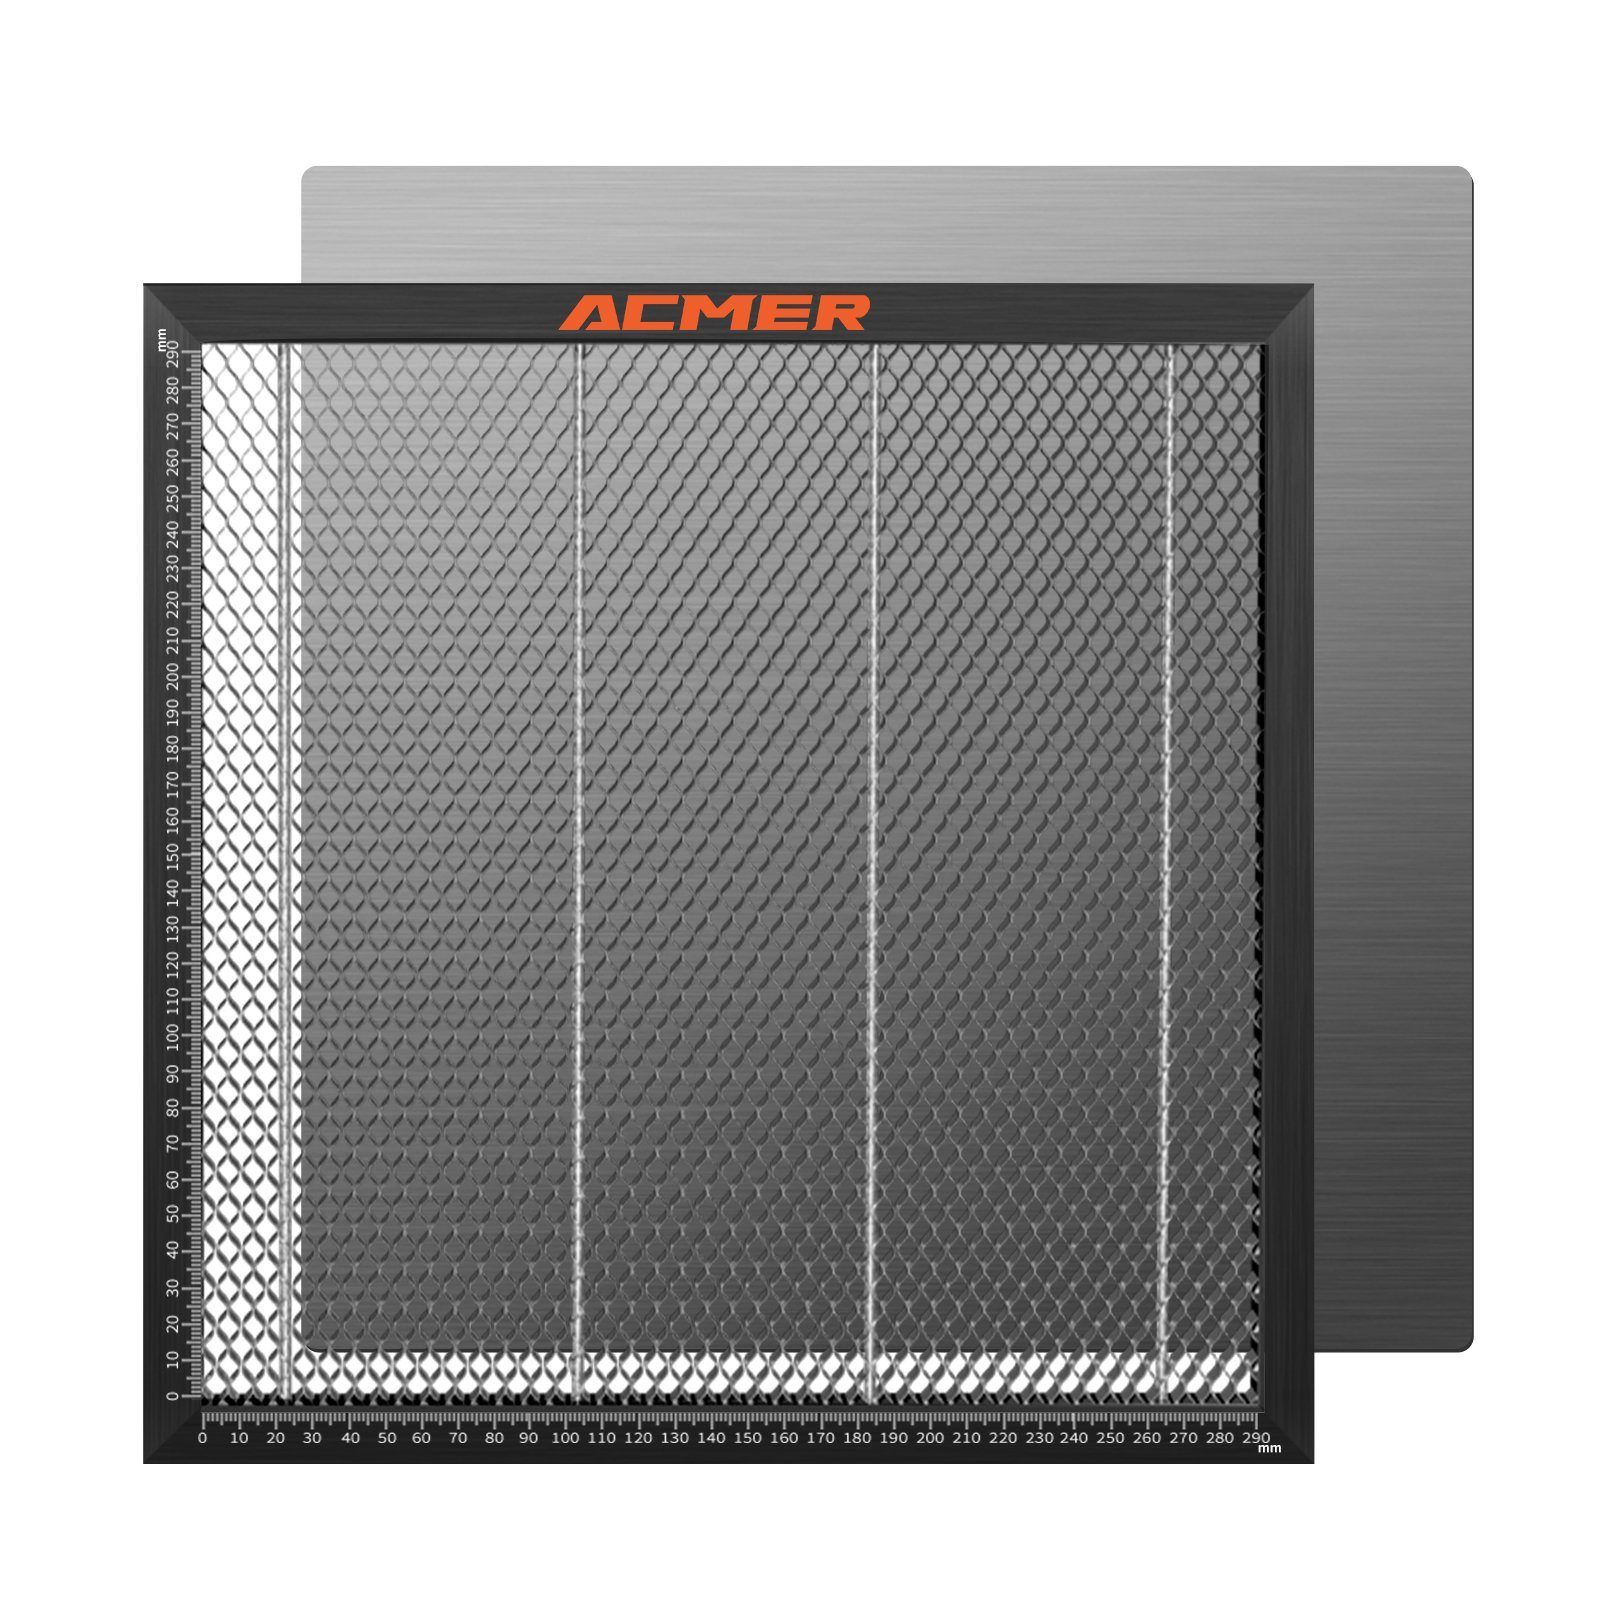 Acmer Graviergerät E10 Laserschneidewaben Arbeitstischplatte Stahlplattenplattform